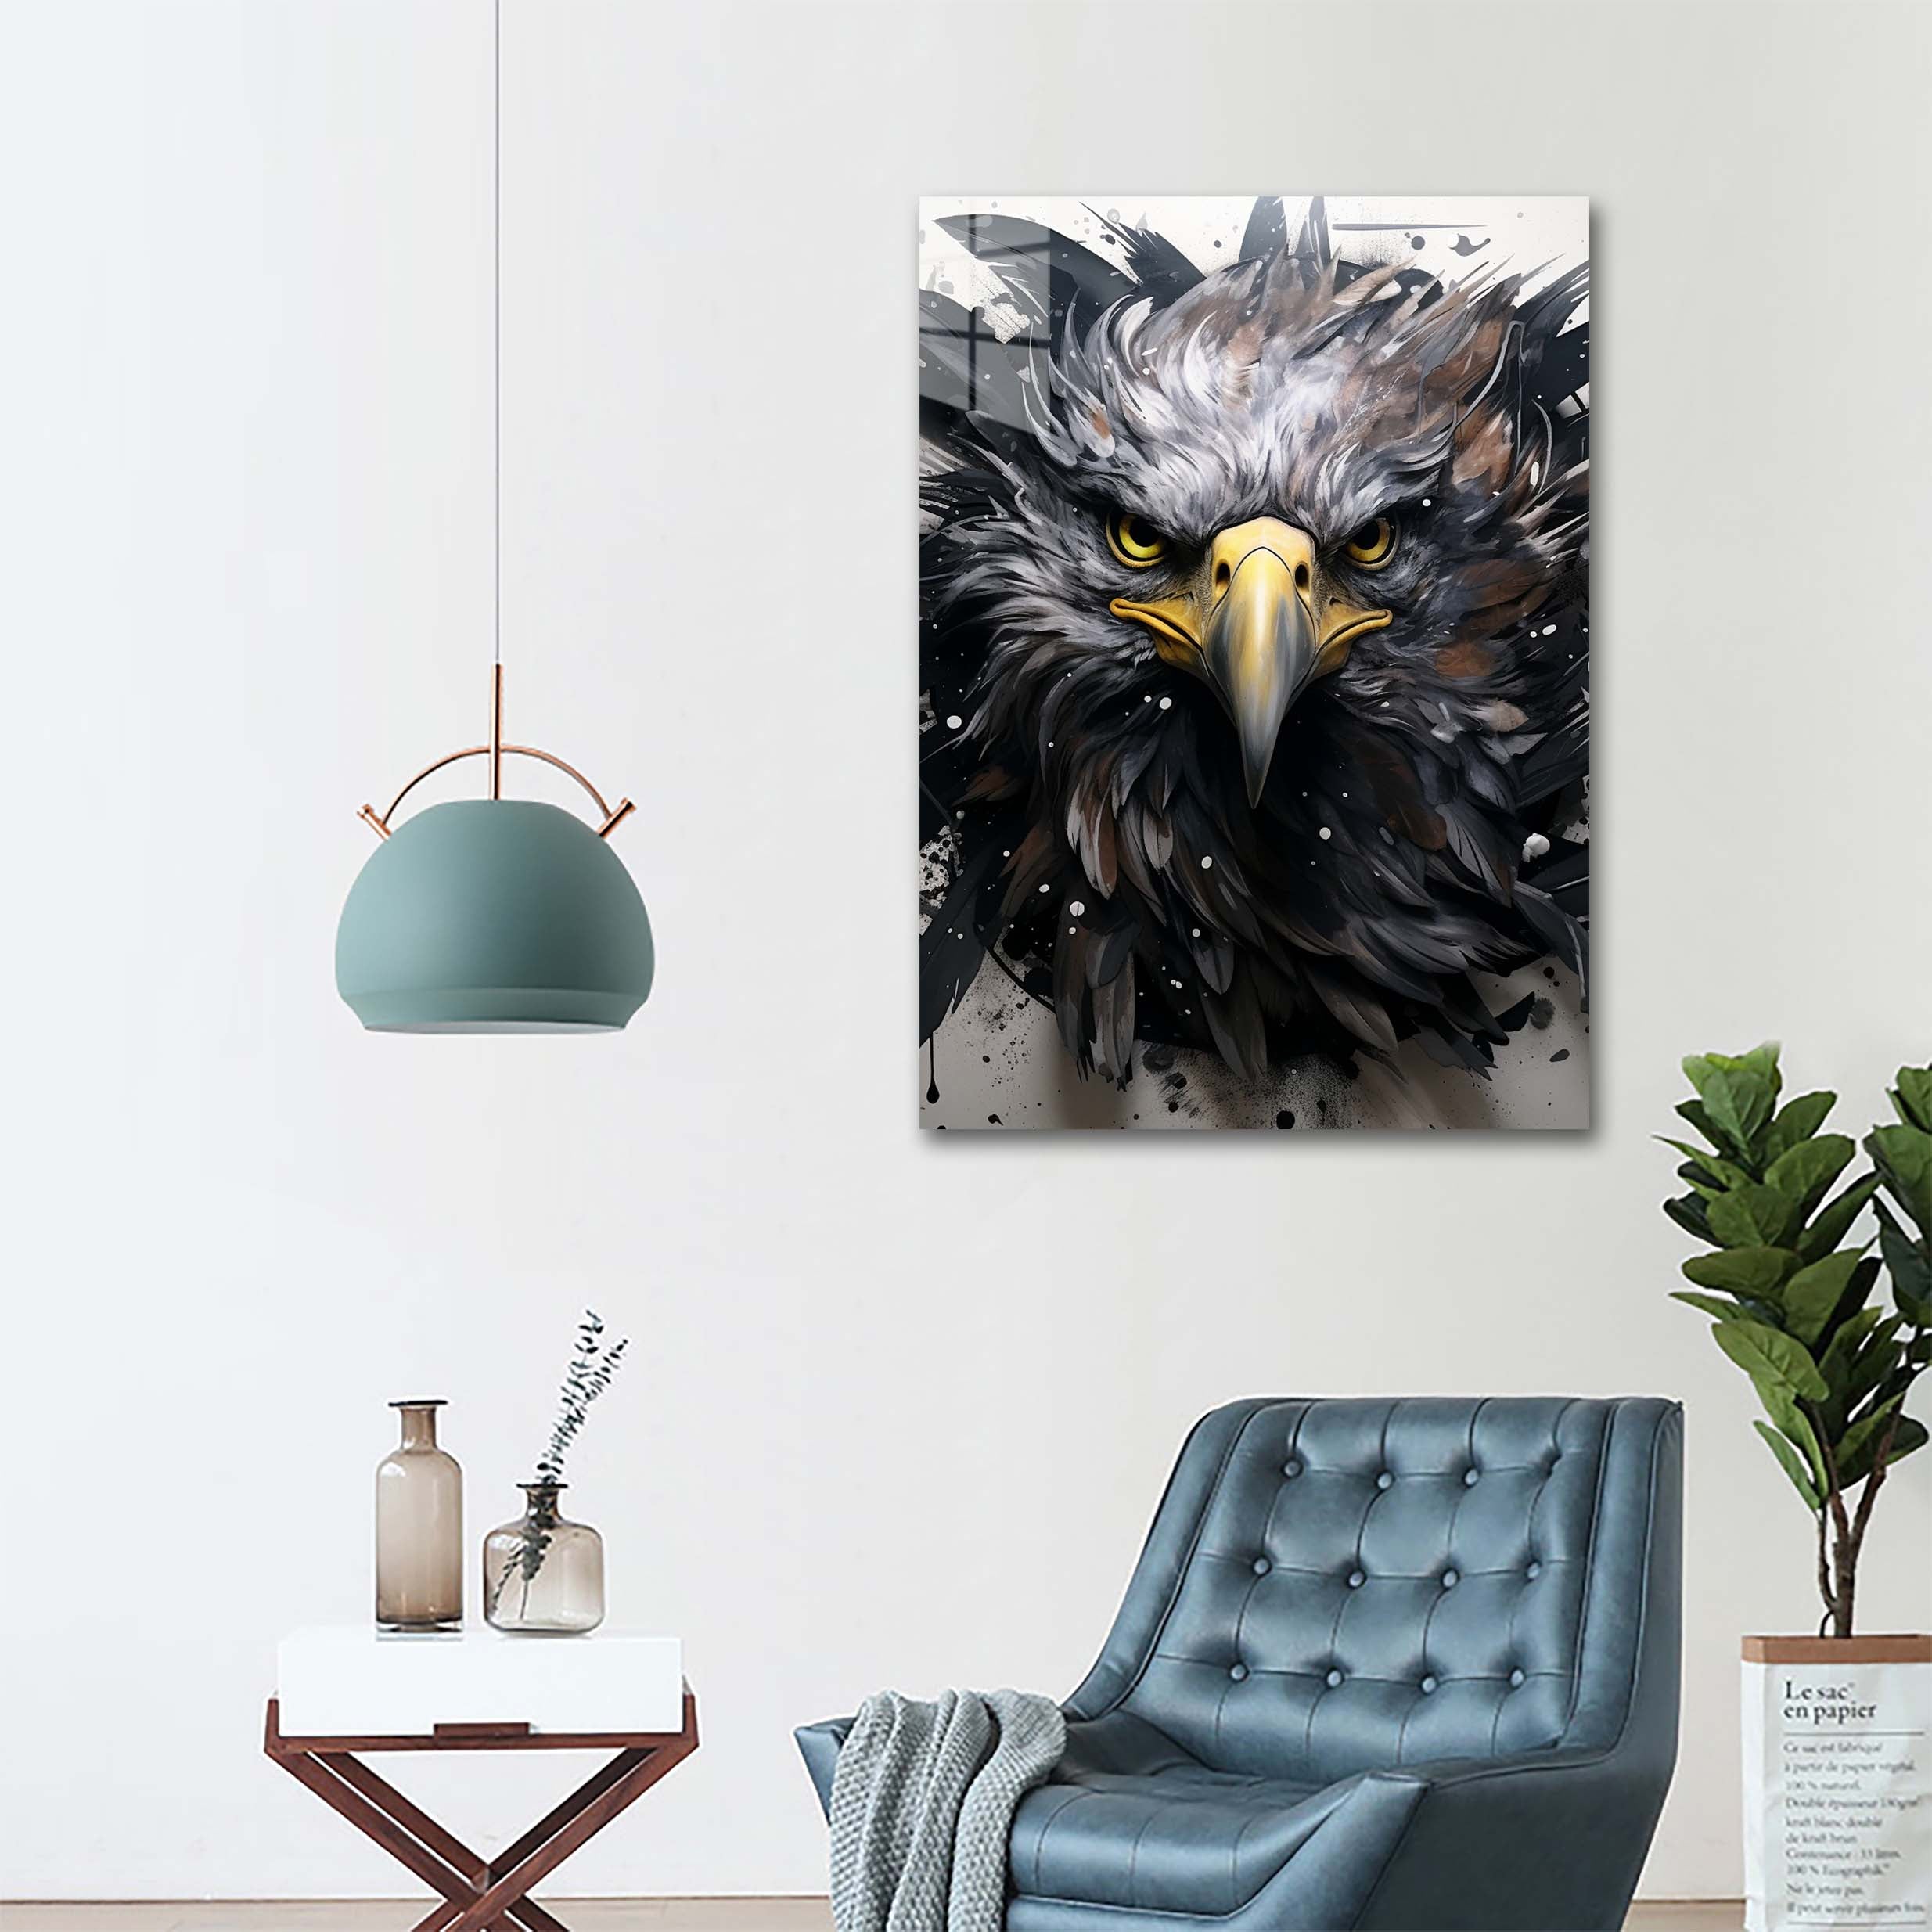 Black Eagle-designed by @Mbaka.ai